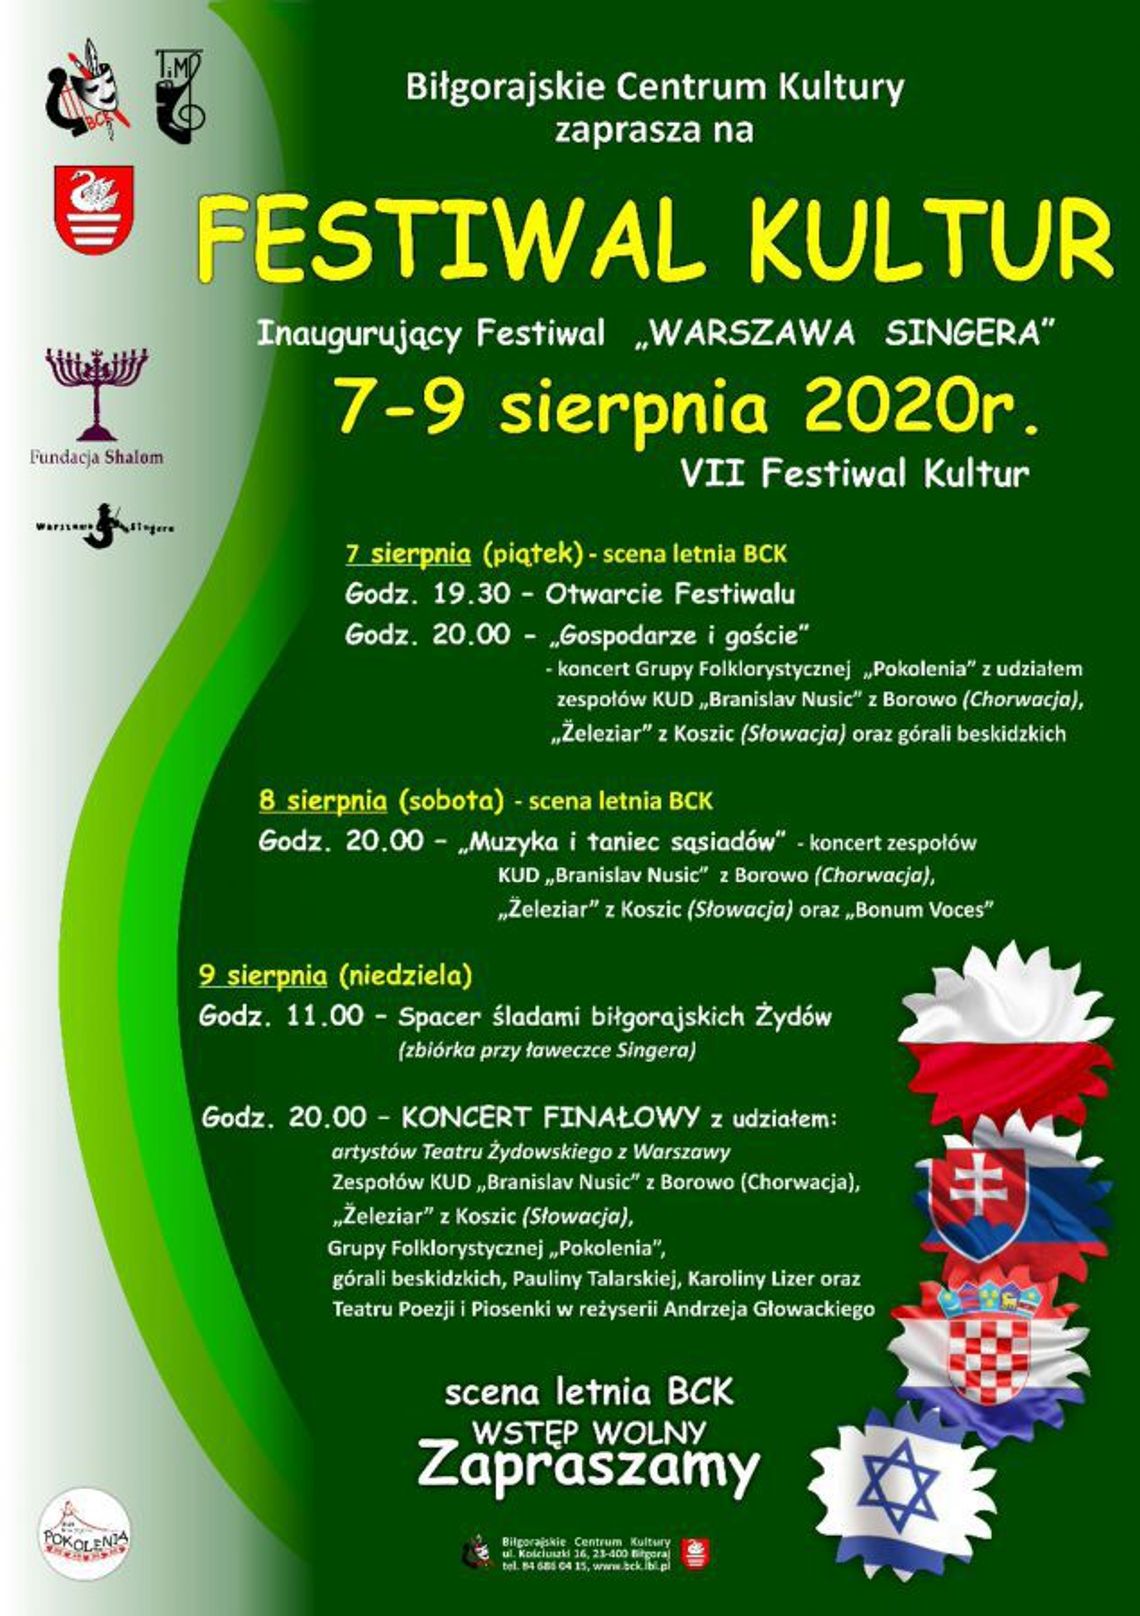 Biłgoraj: Festiwal Kultur 2020 - tance, muzyka i pyszne jedzenie